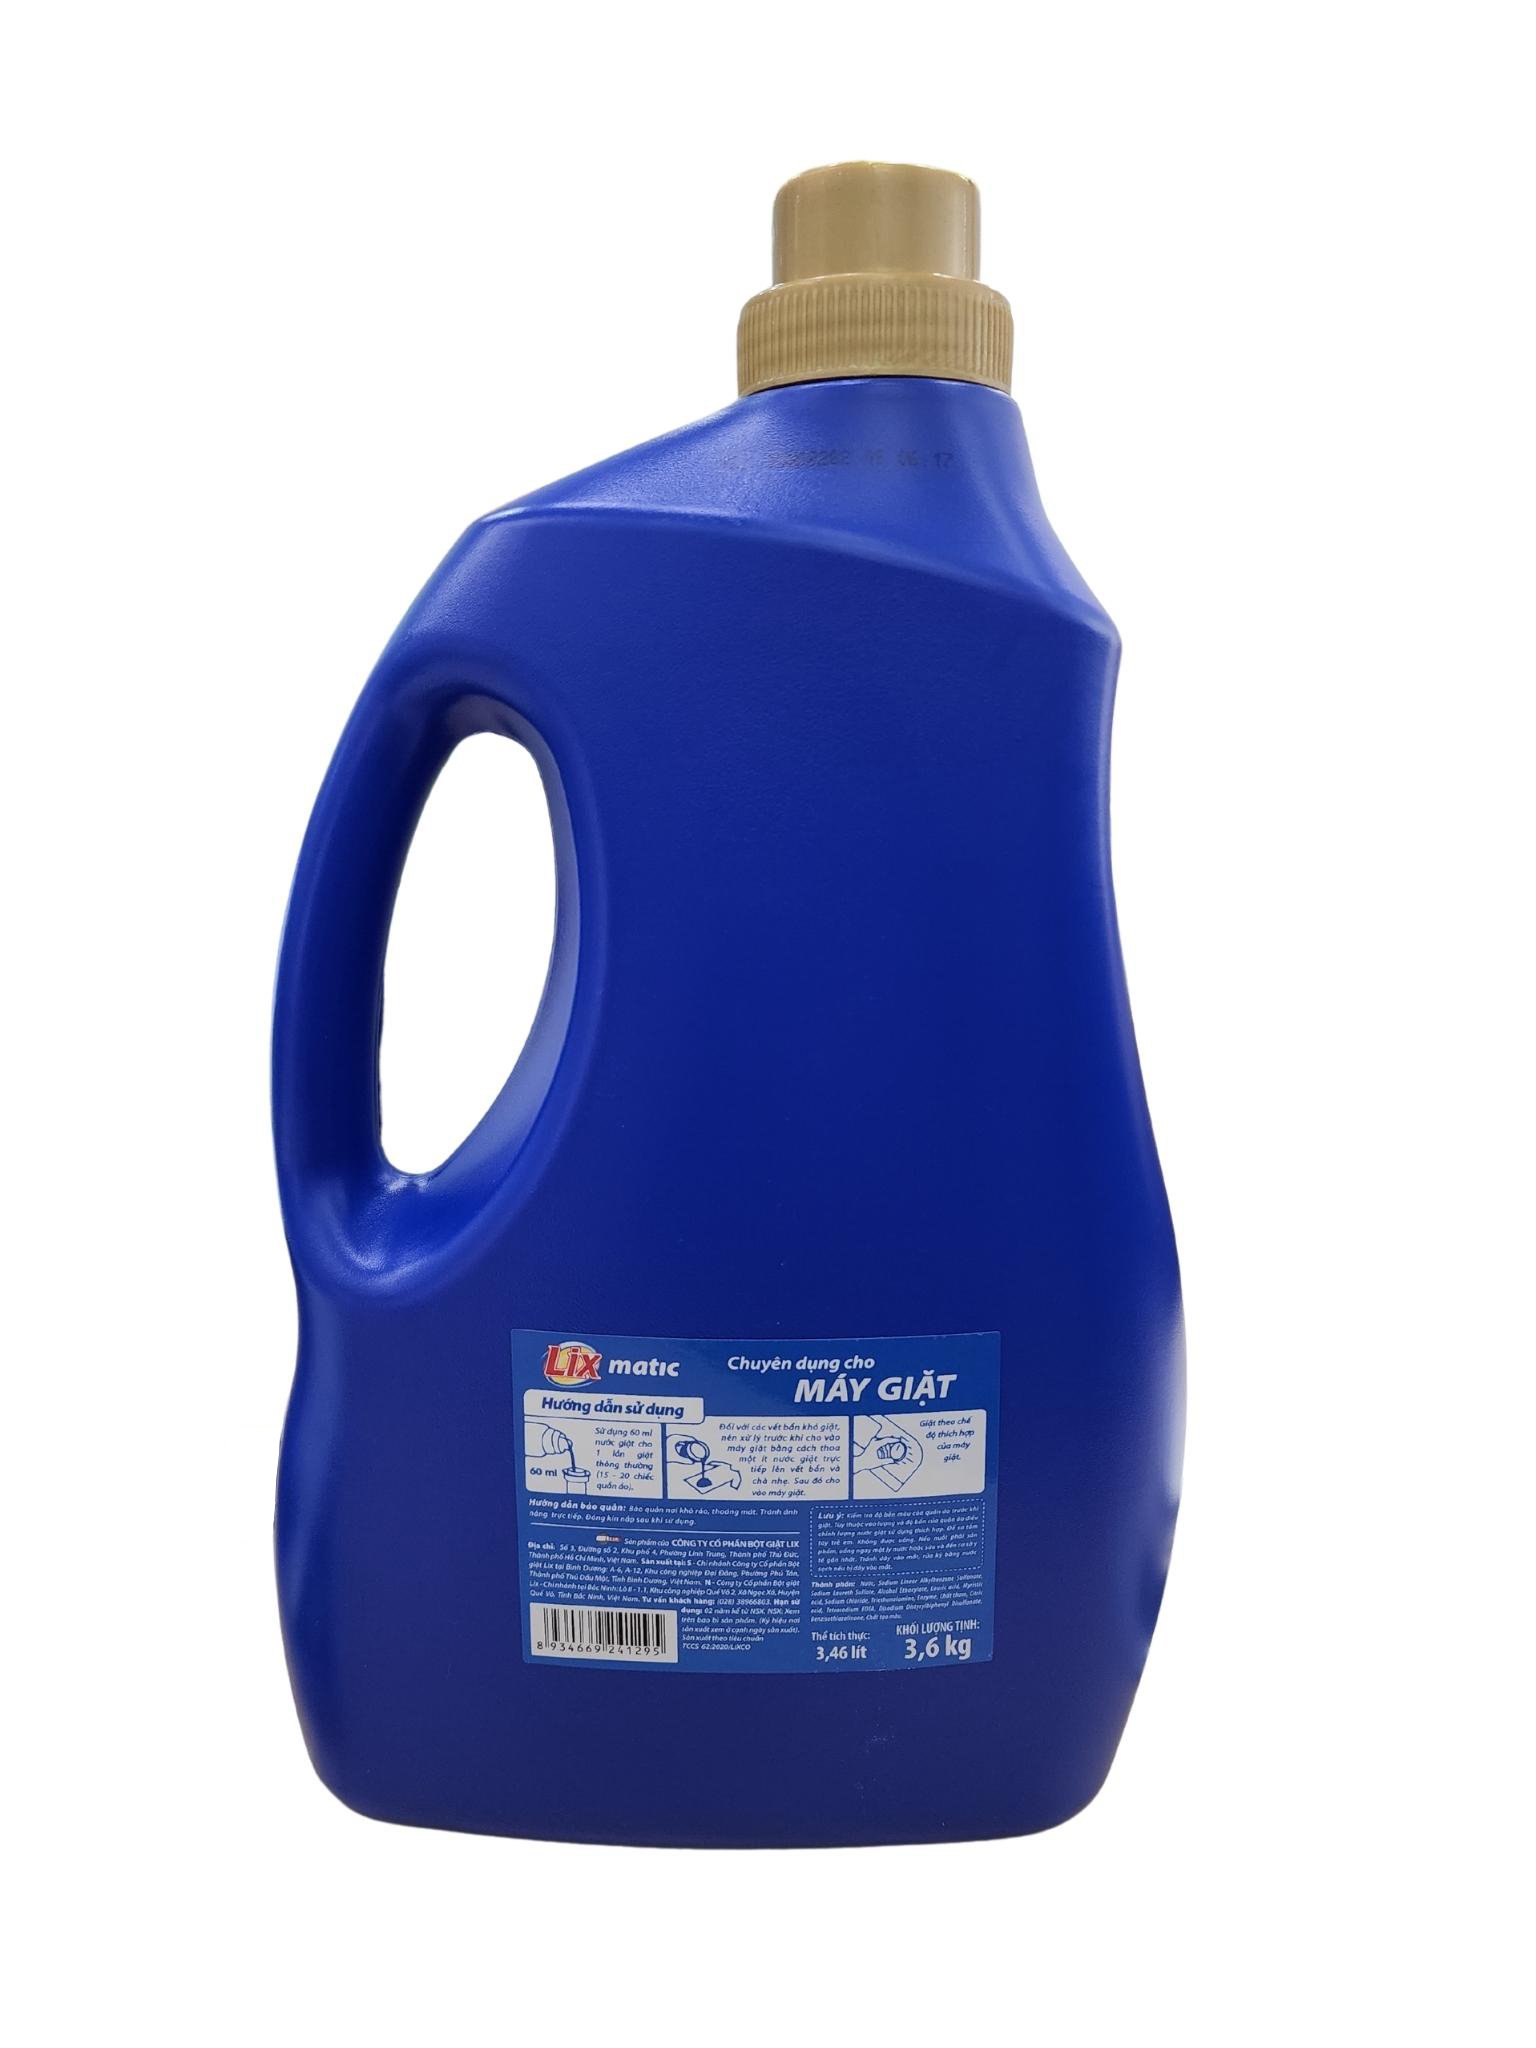 Nước giặt Lix Matic hương nước hoa 3.6Kg NGM40 - Dành cho máy giặt cửa trước